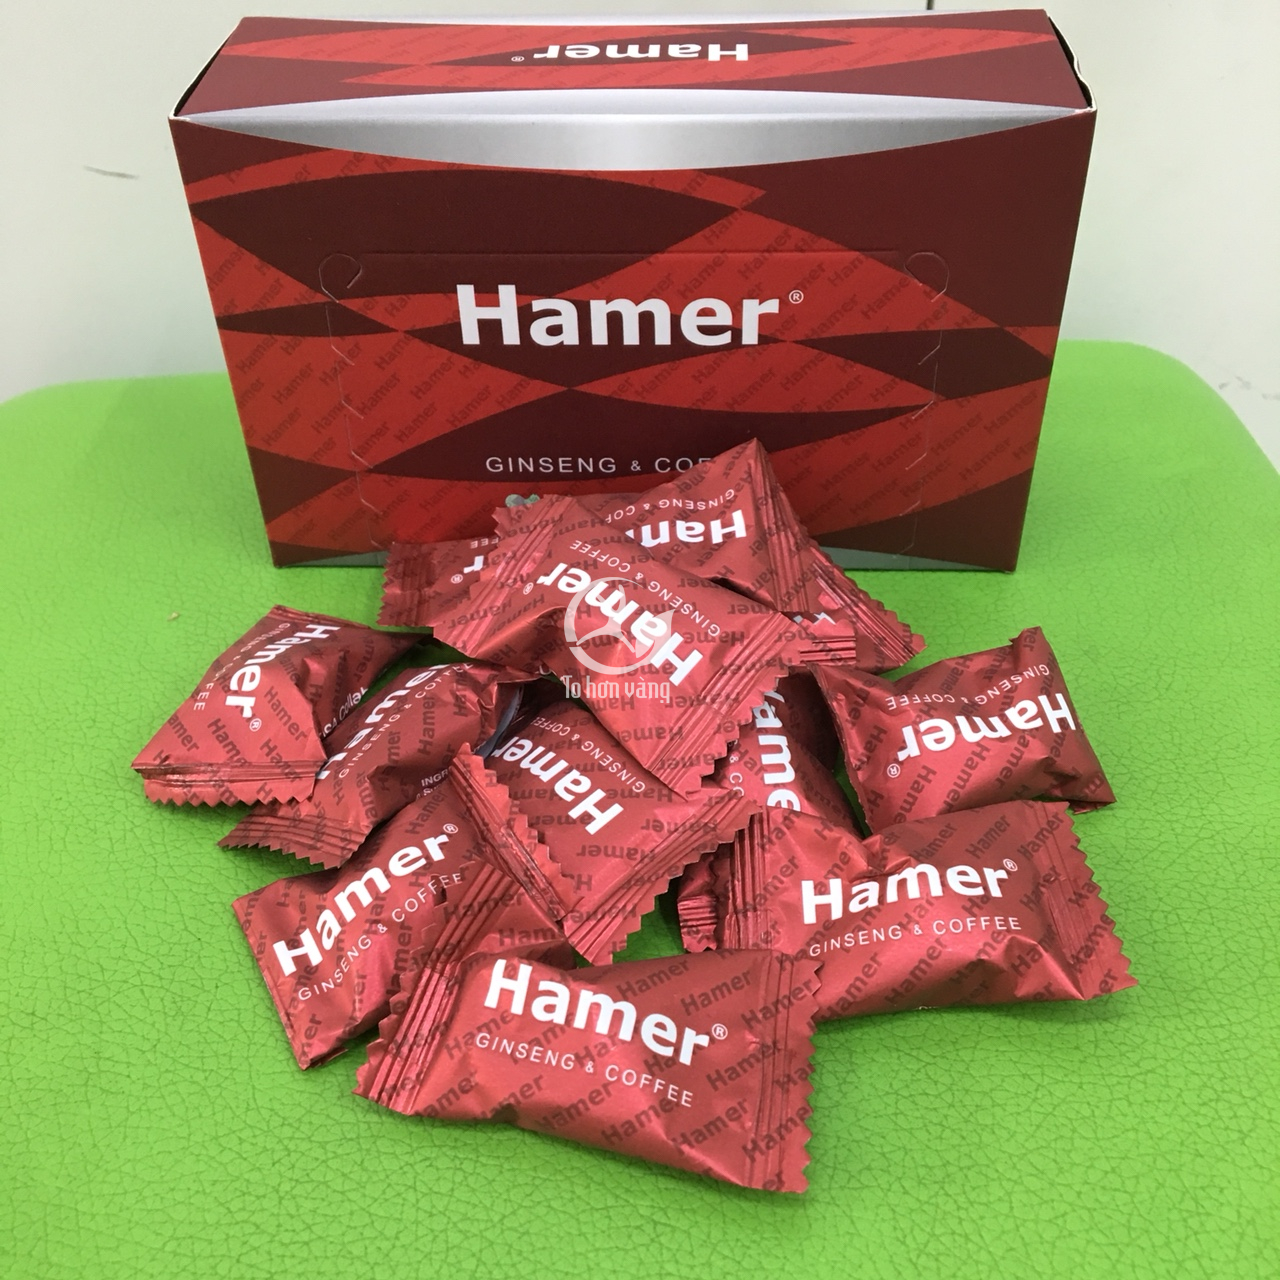 Kẹo sâm Hamer có nguồn gốc xuất xứ từ Mỹ với công nghệ sản xuất hiện đại được sản xuất tại Malaysia mang đến chất lượng vượt trội và yên tâm cho người dùng.